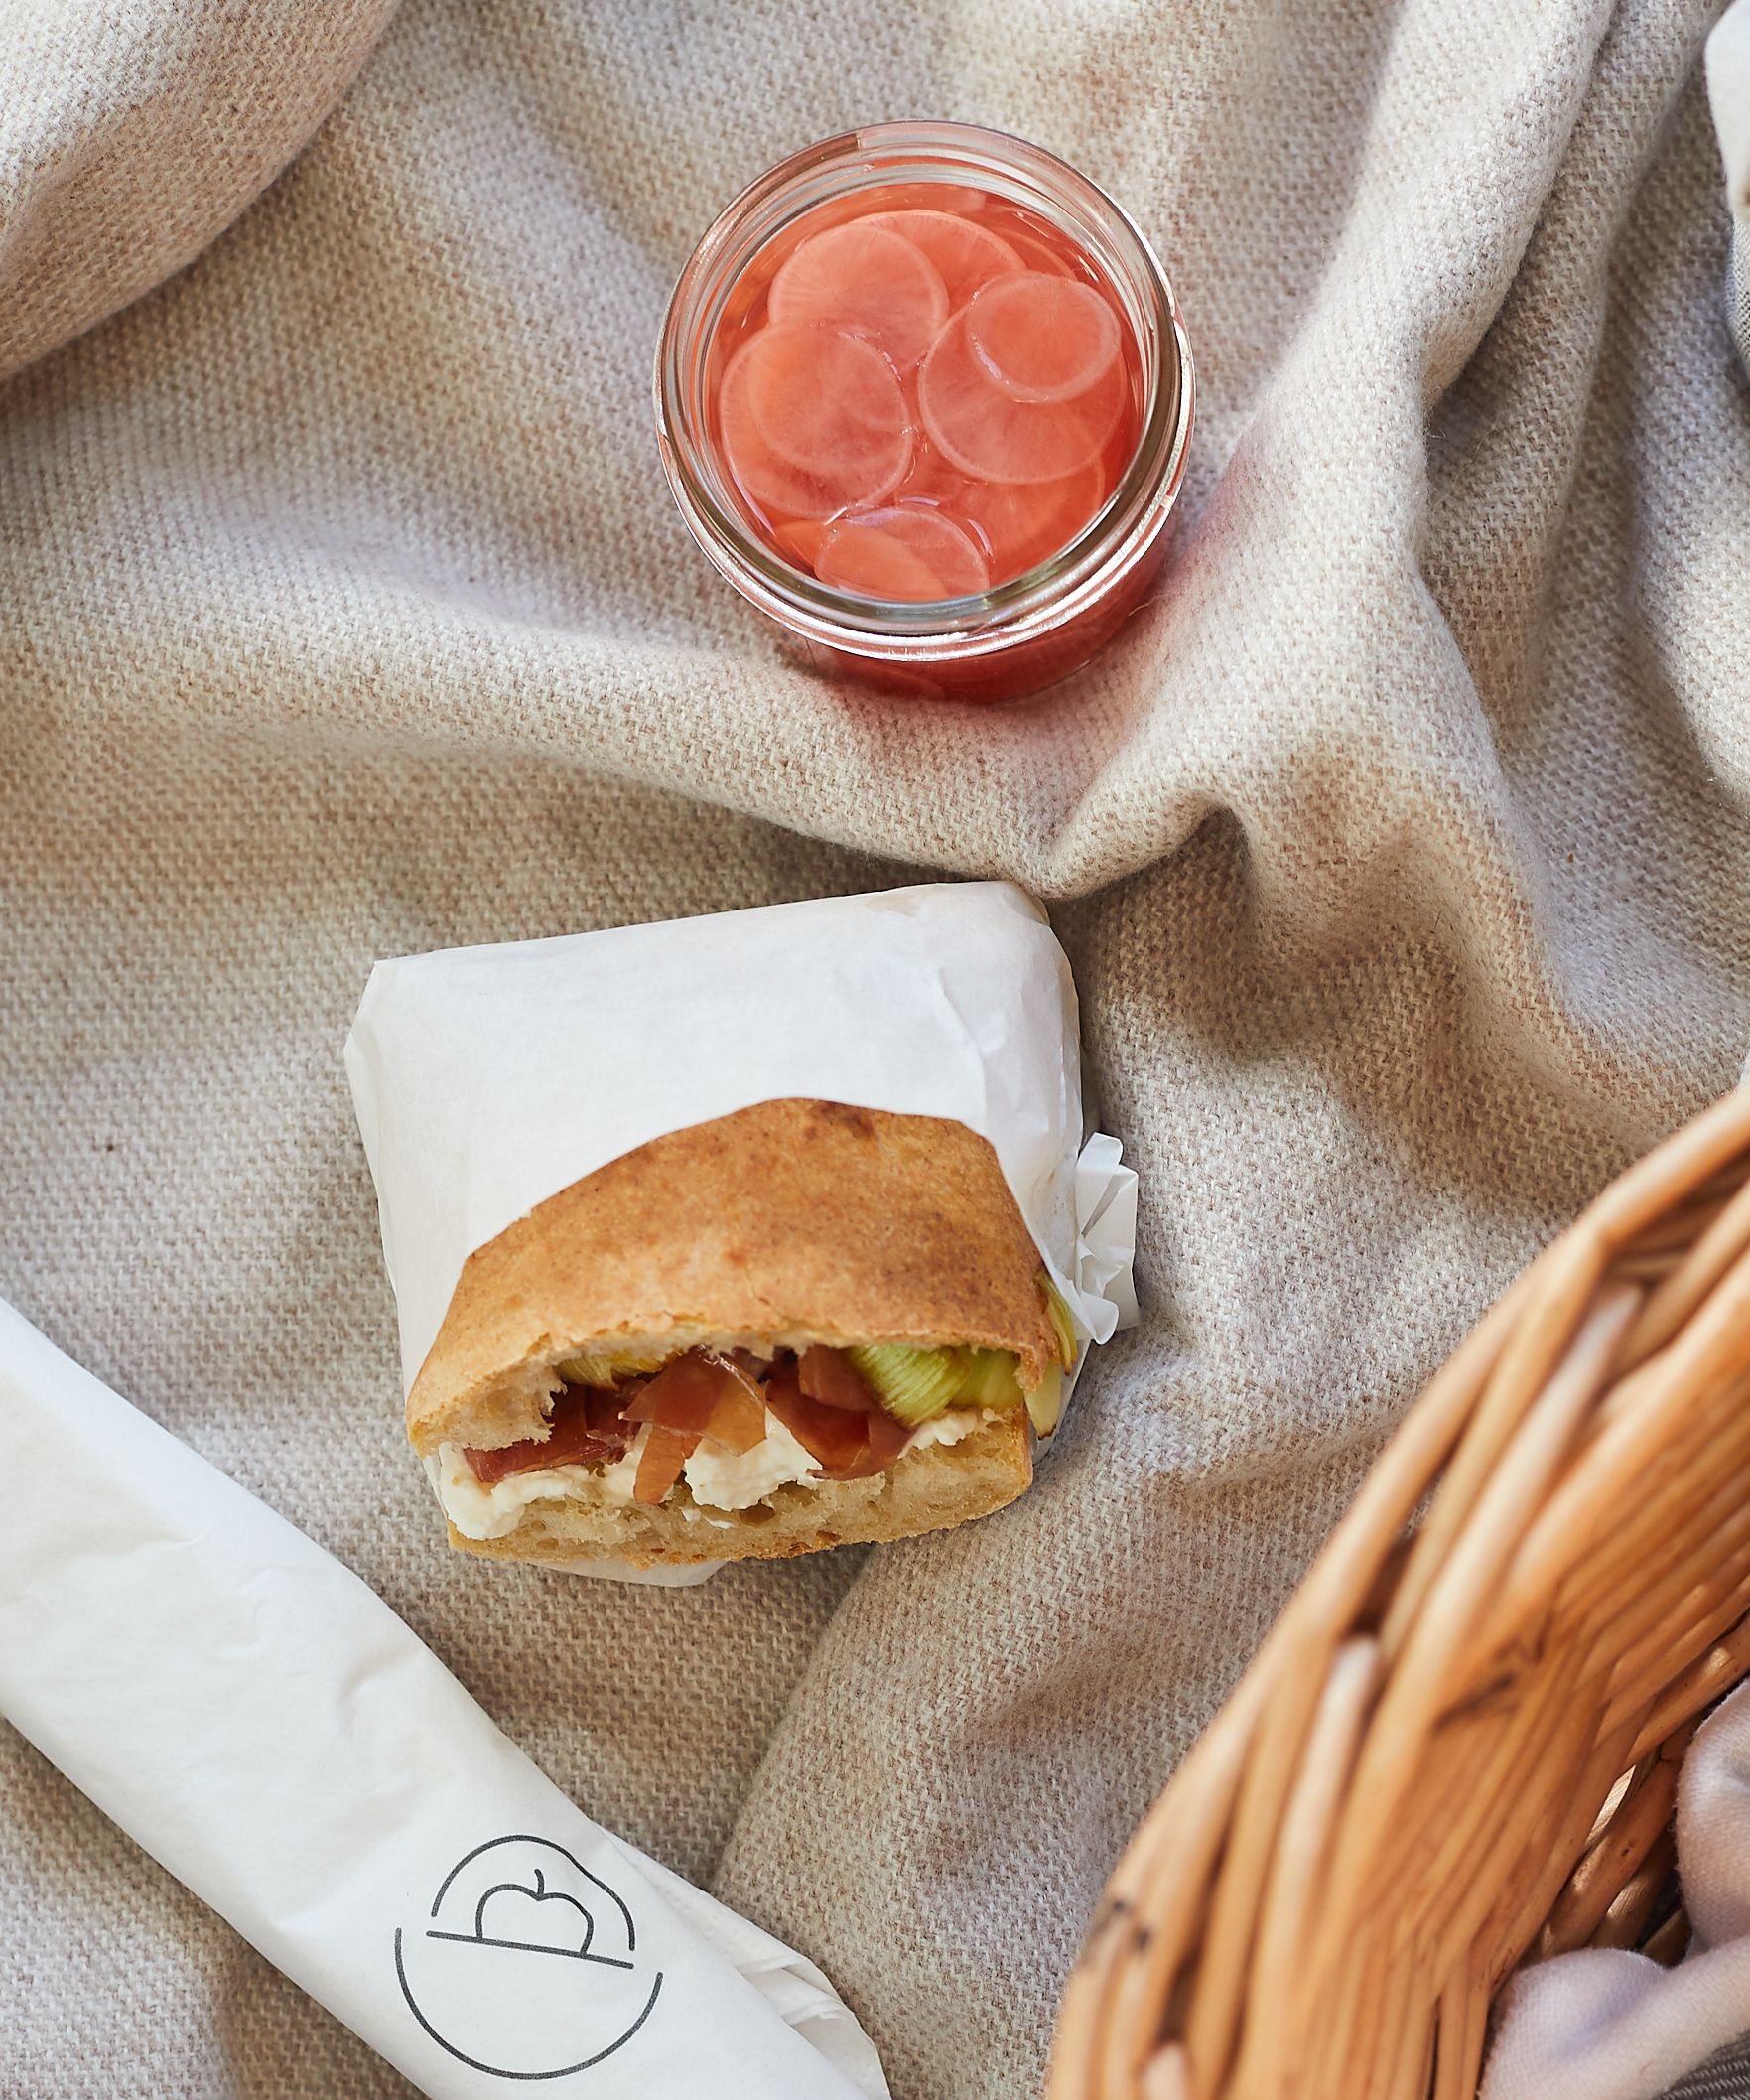 Ciabatta-Sandwich in Papier gewickelt, süß-saure Radieschen im Glas auf cremefarbener Decke